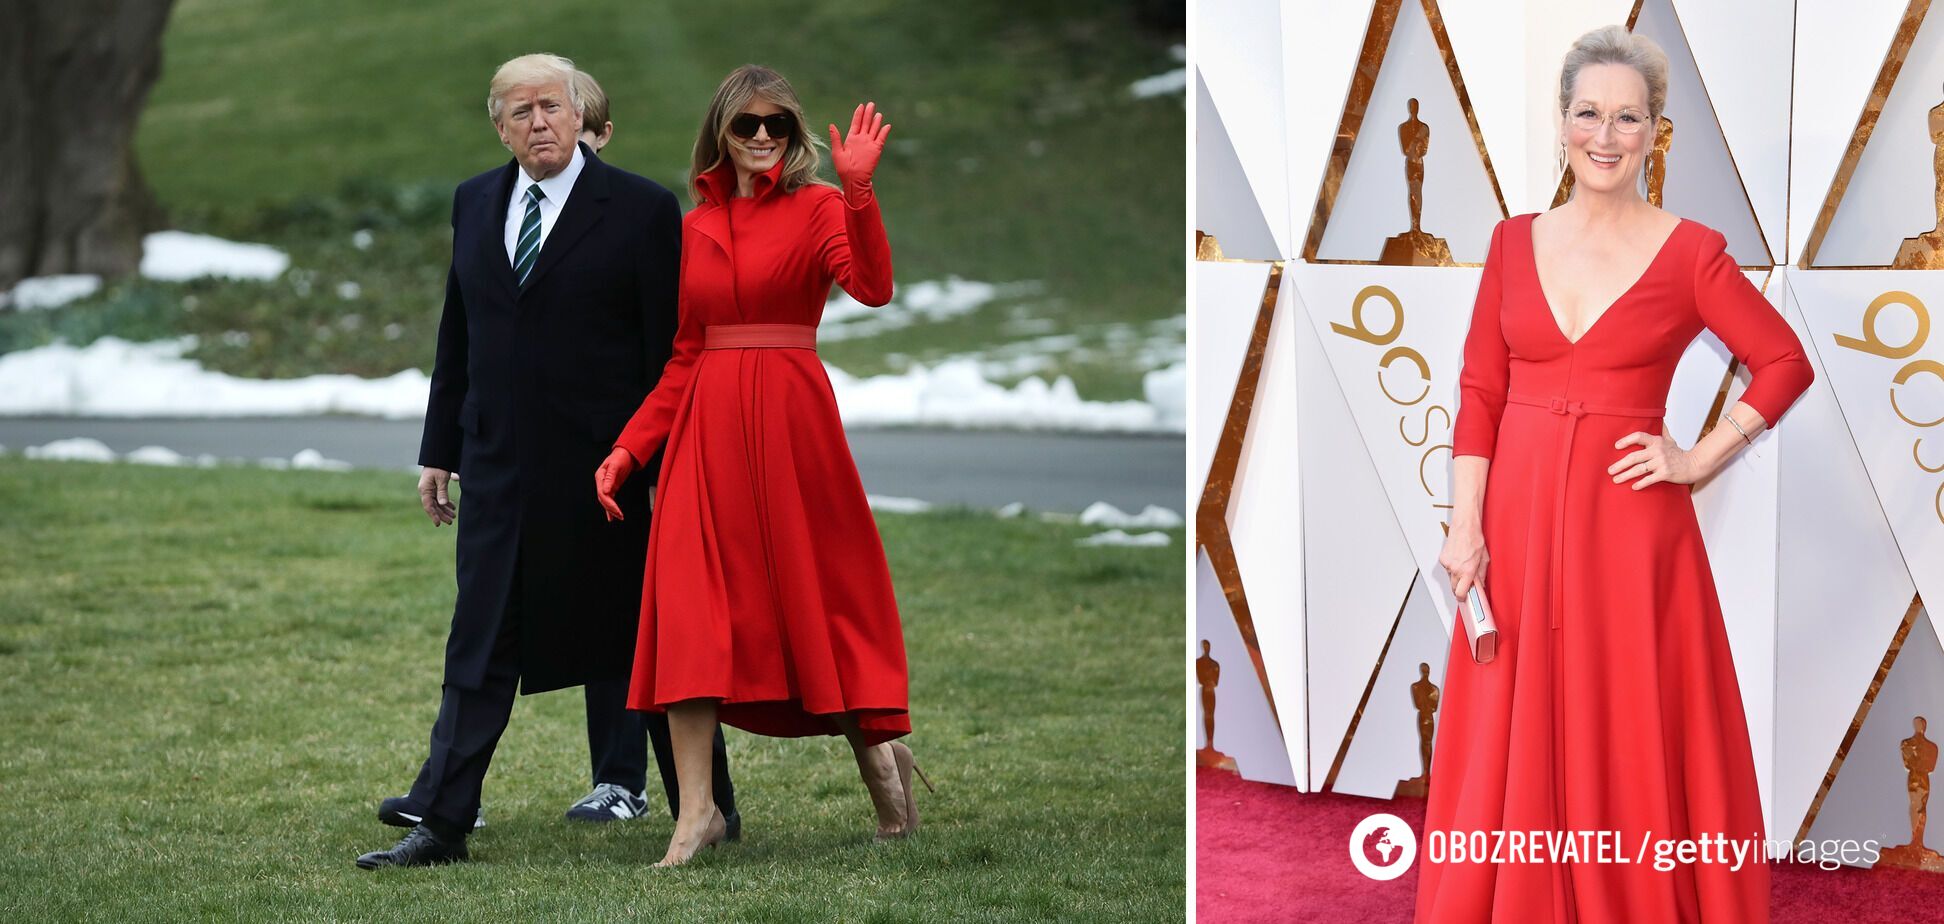 Мелания Трамп / Мэрил Стрип в одежде красного цвета